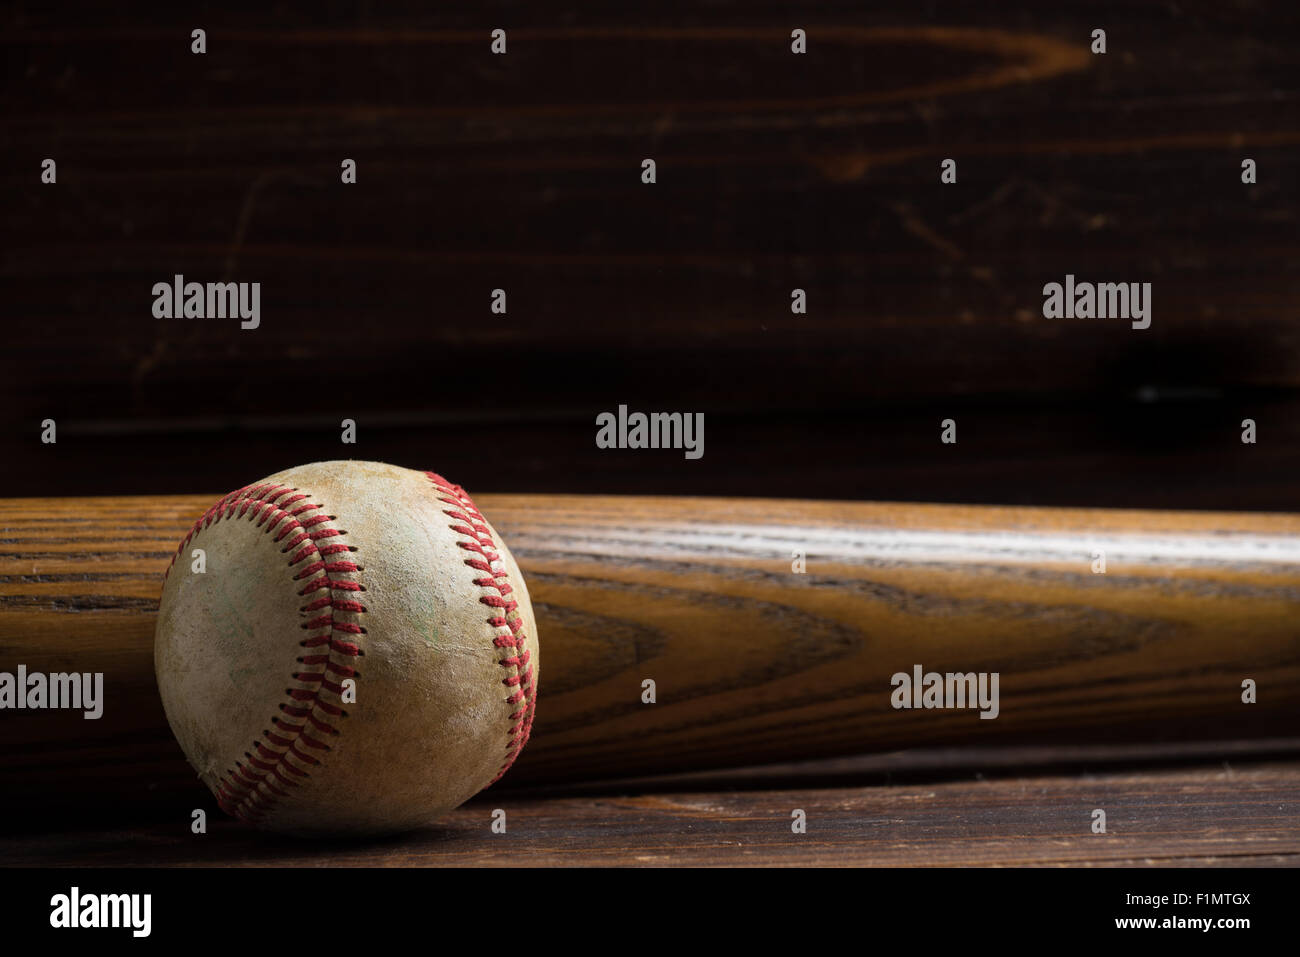 Baseball-Ausrüstung: hölzerne Schläger und Ball auf einem hölzernen Brett oder Bank Hintergrund Stockfoto